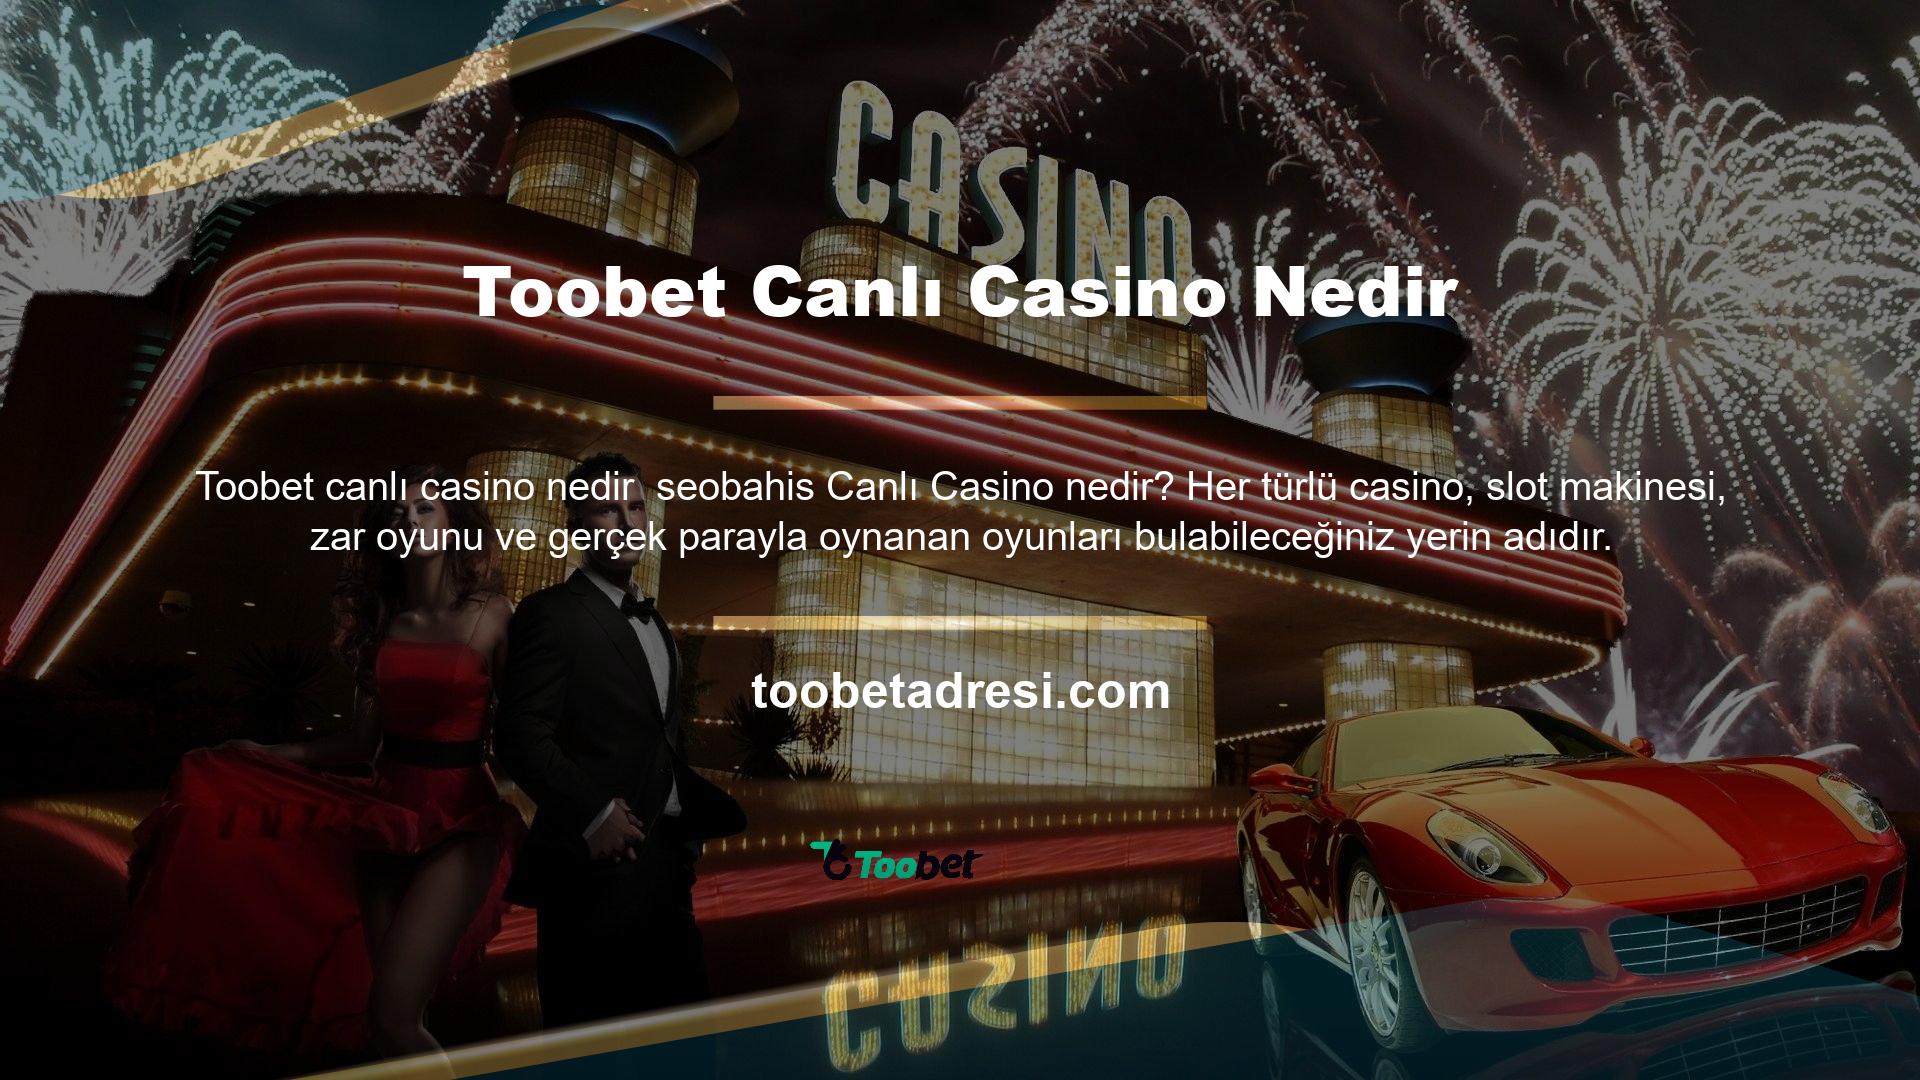 Bu noktada canlı casino aynı zamanda hizmetin çevrimiçi olarak da sunulması anlamına gelmektedir